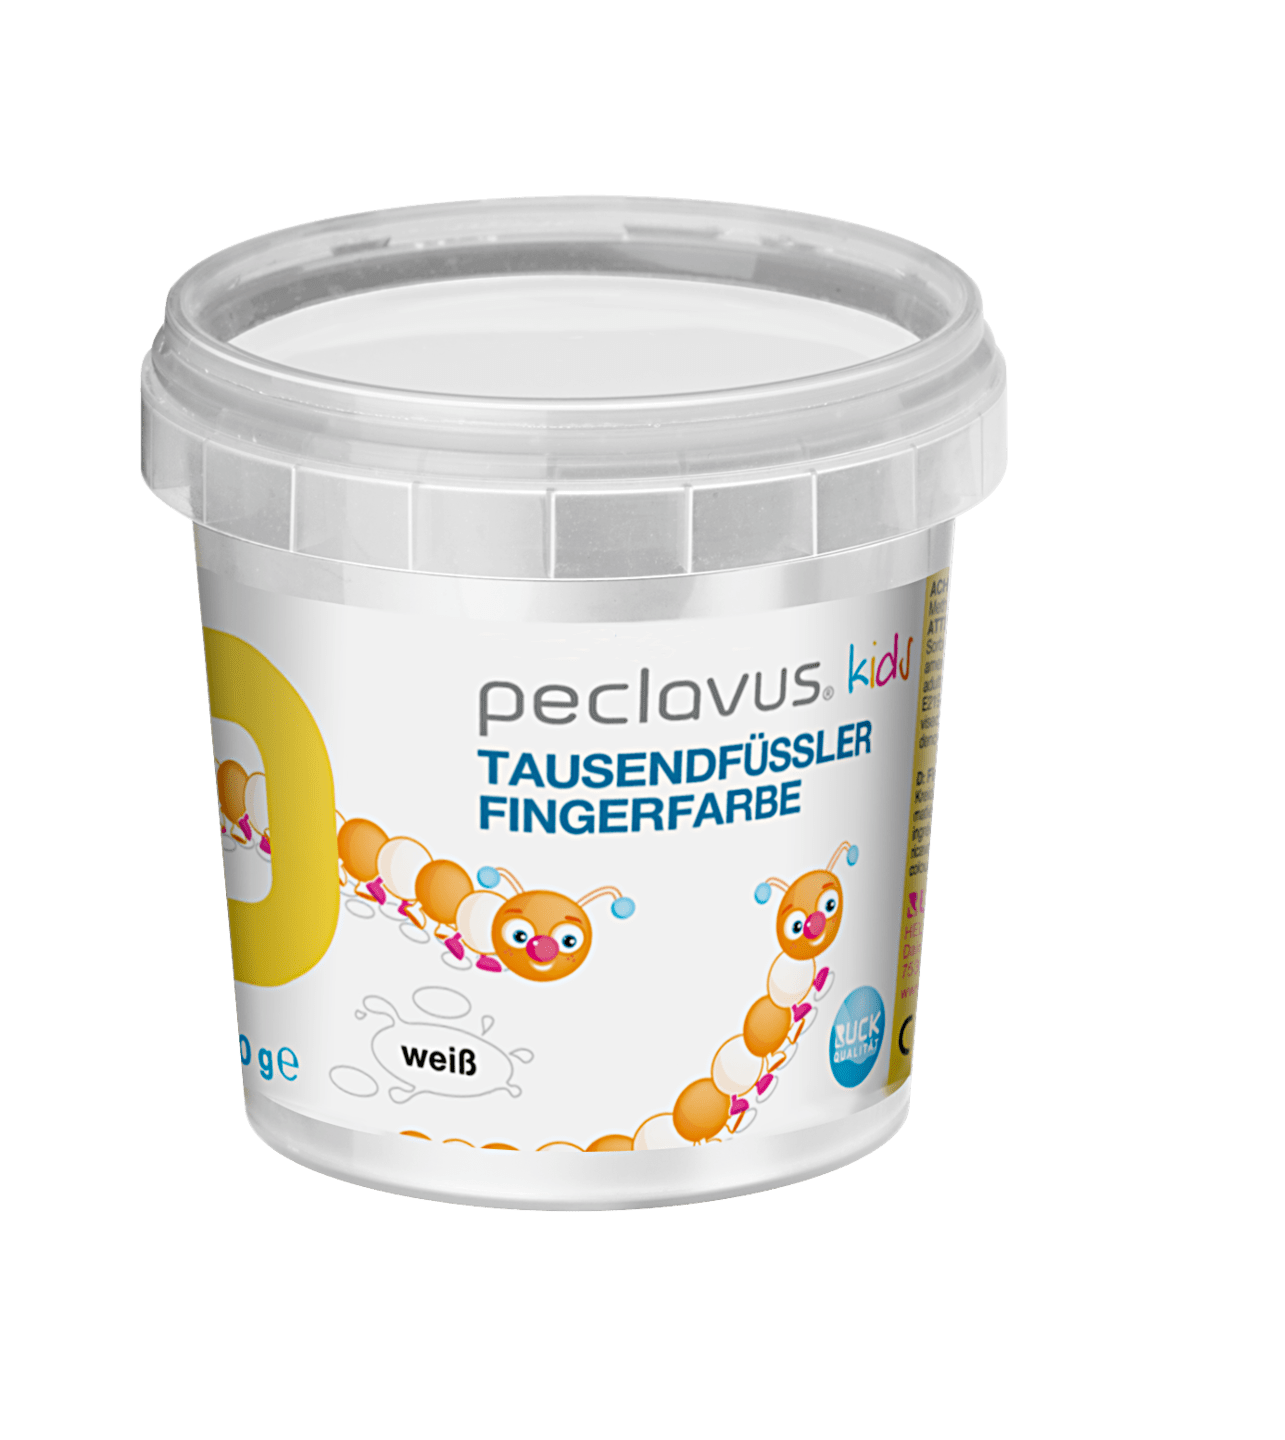 peclavus - Fingerfarbe, 150 g in weiß